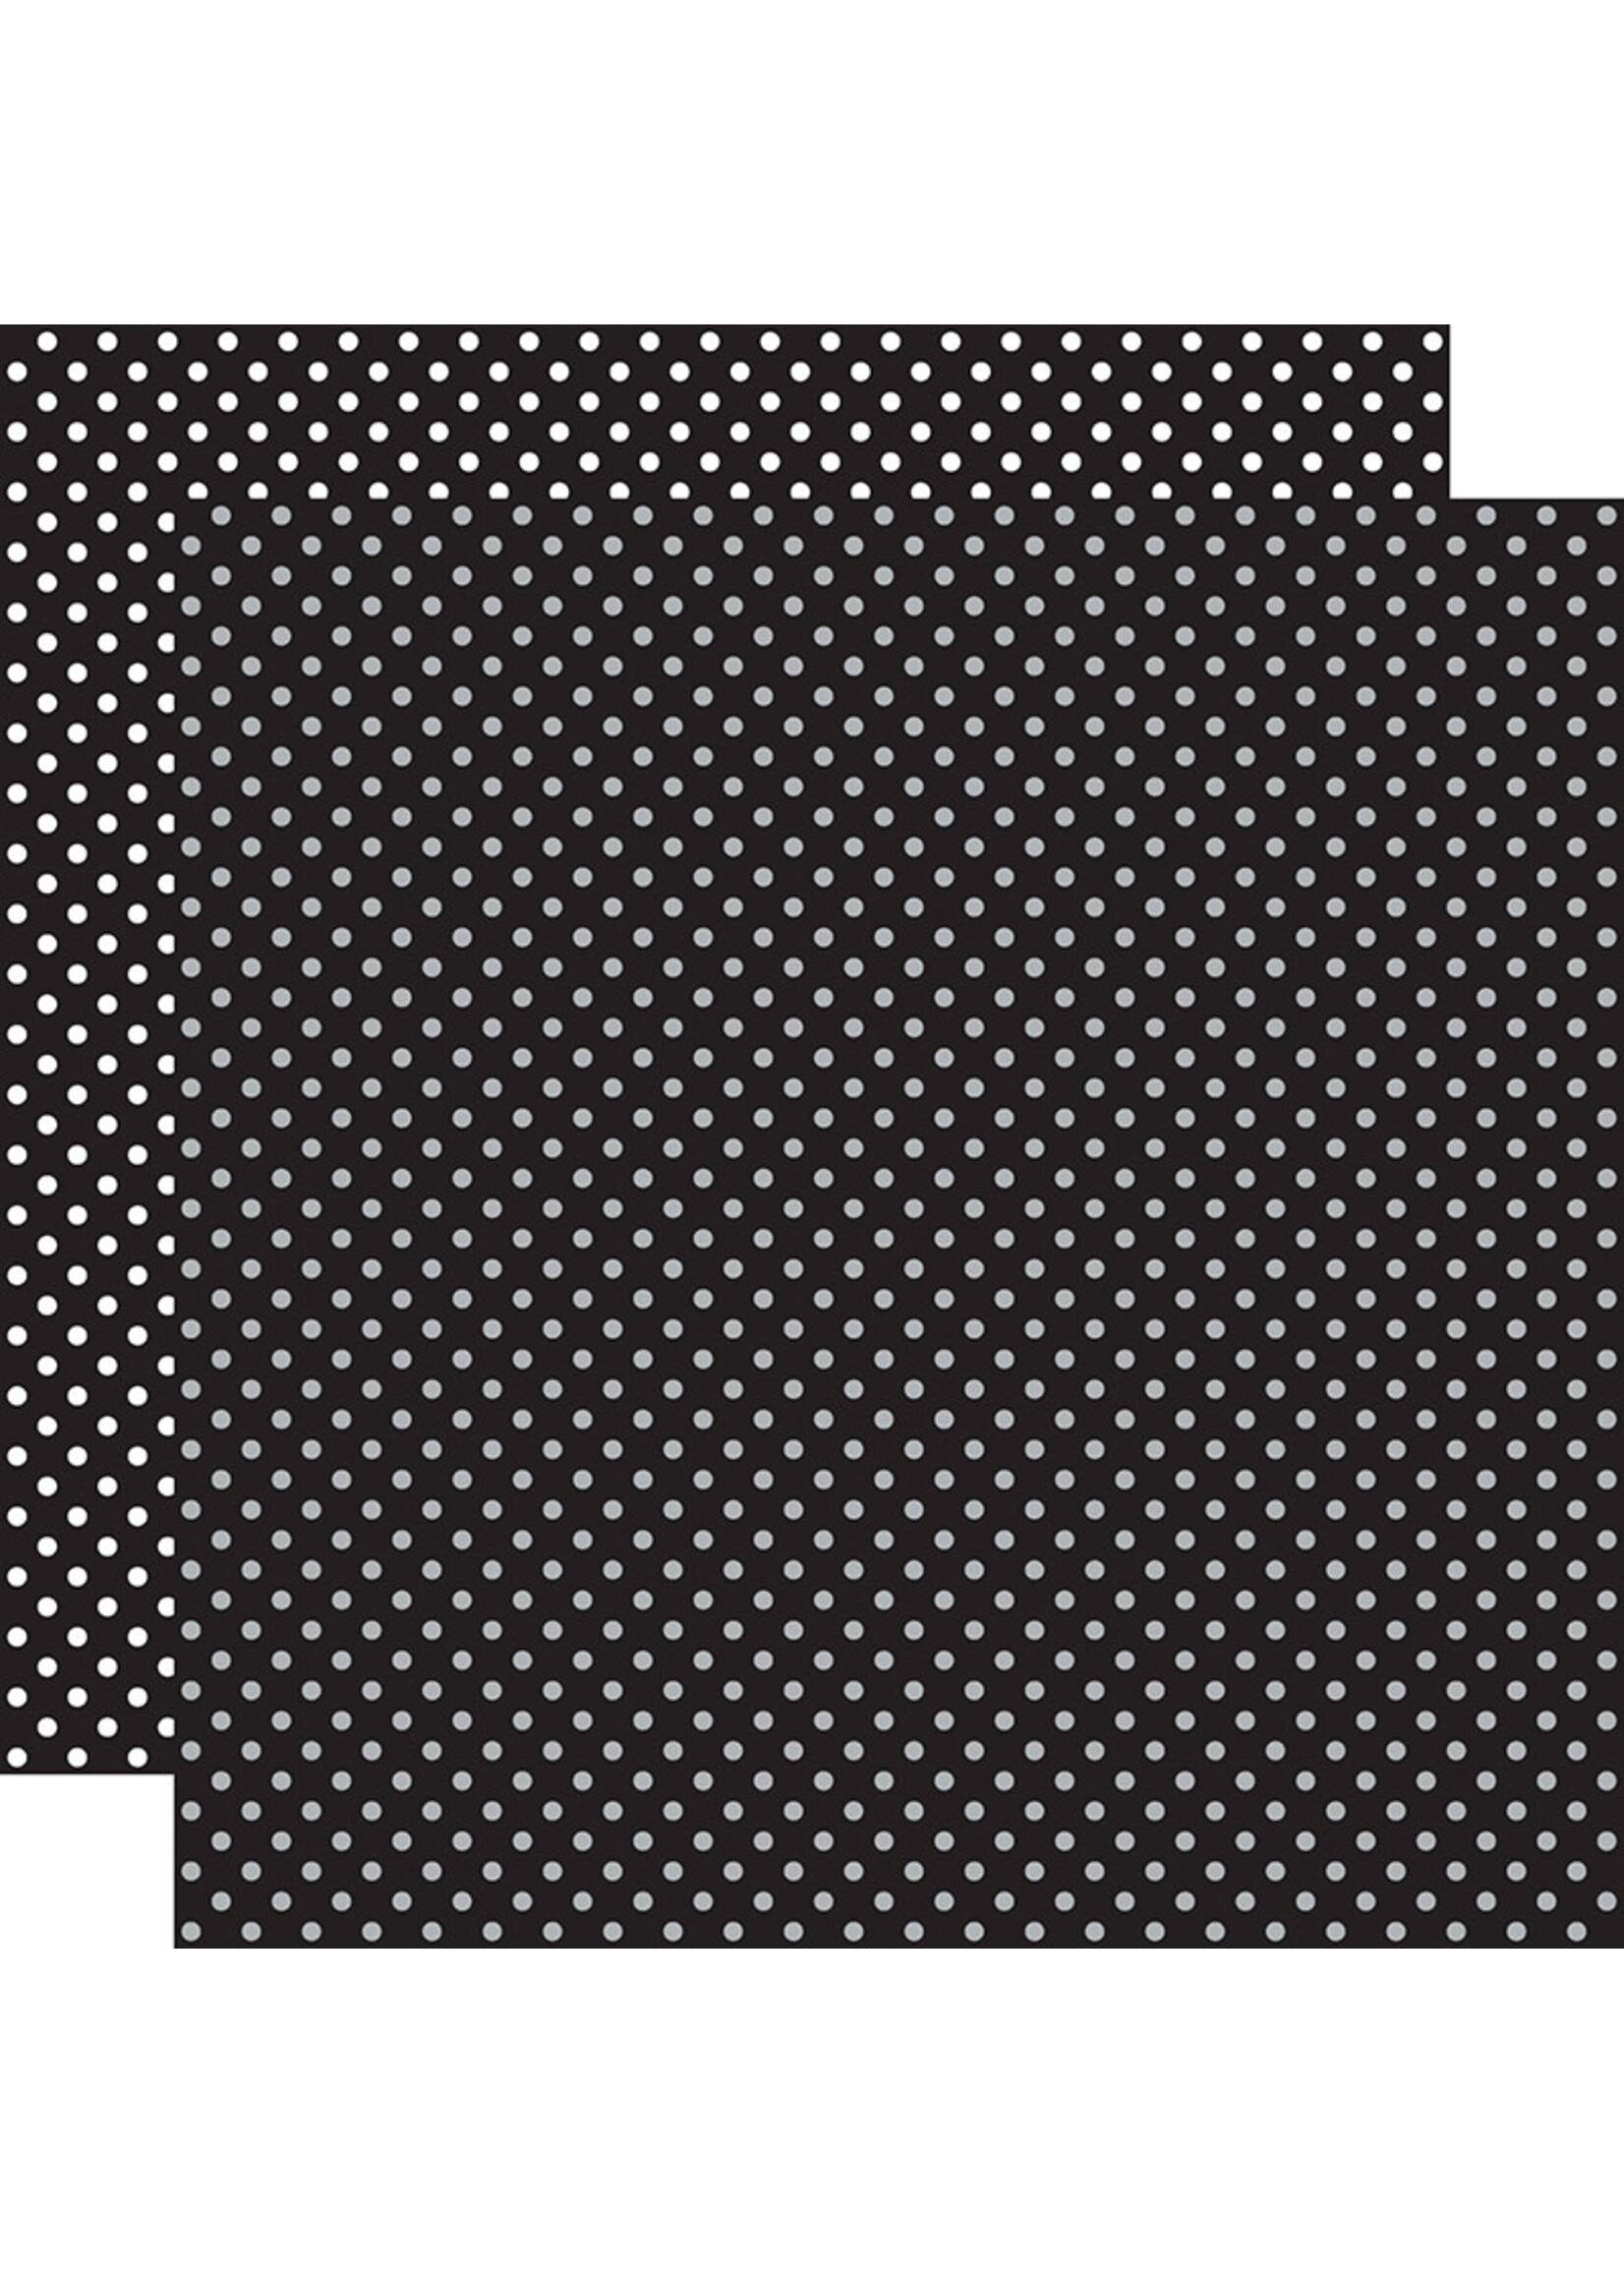 Echo Park Echo Park 12x12 Dots & Stripes, Black